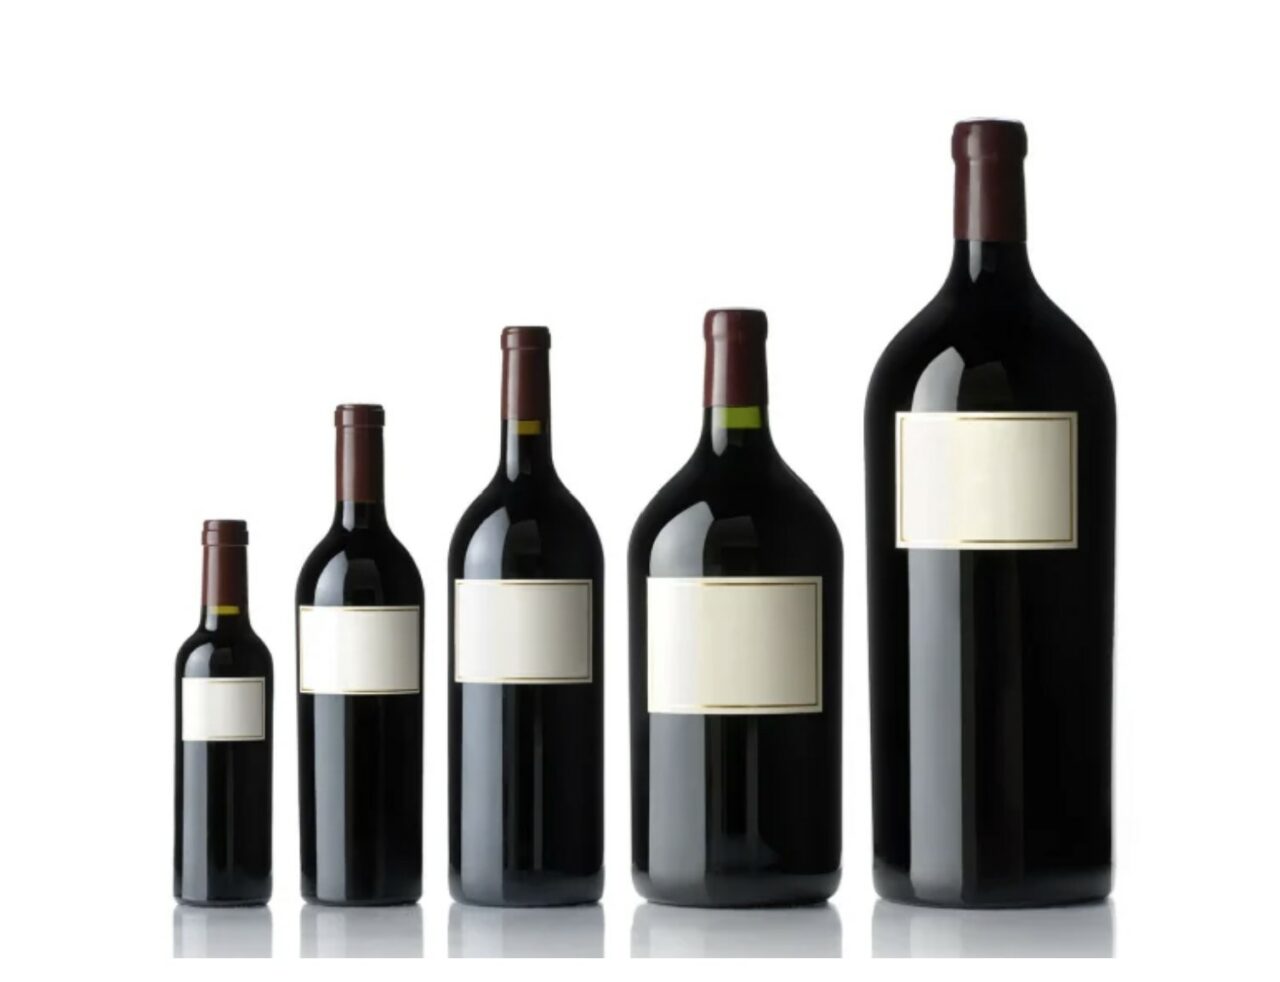 Wine bottle sizes